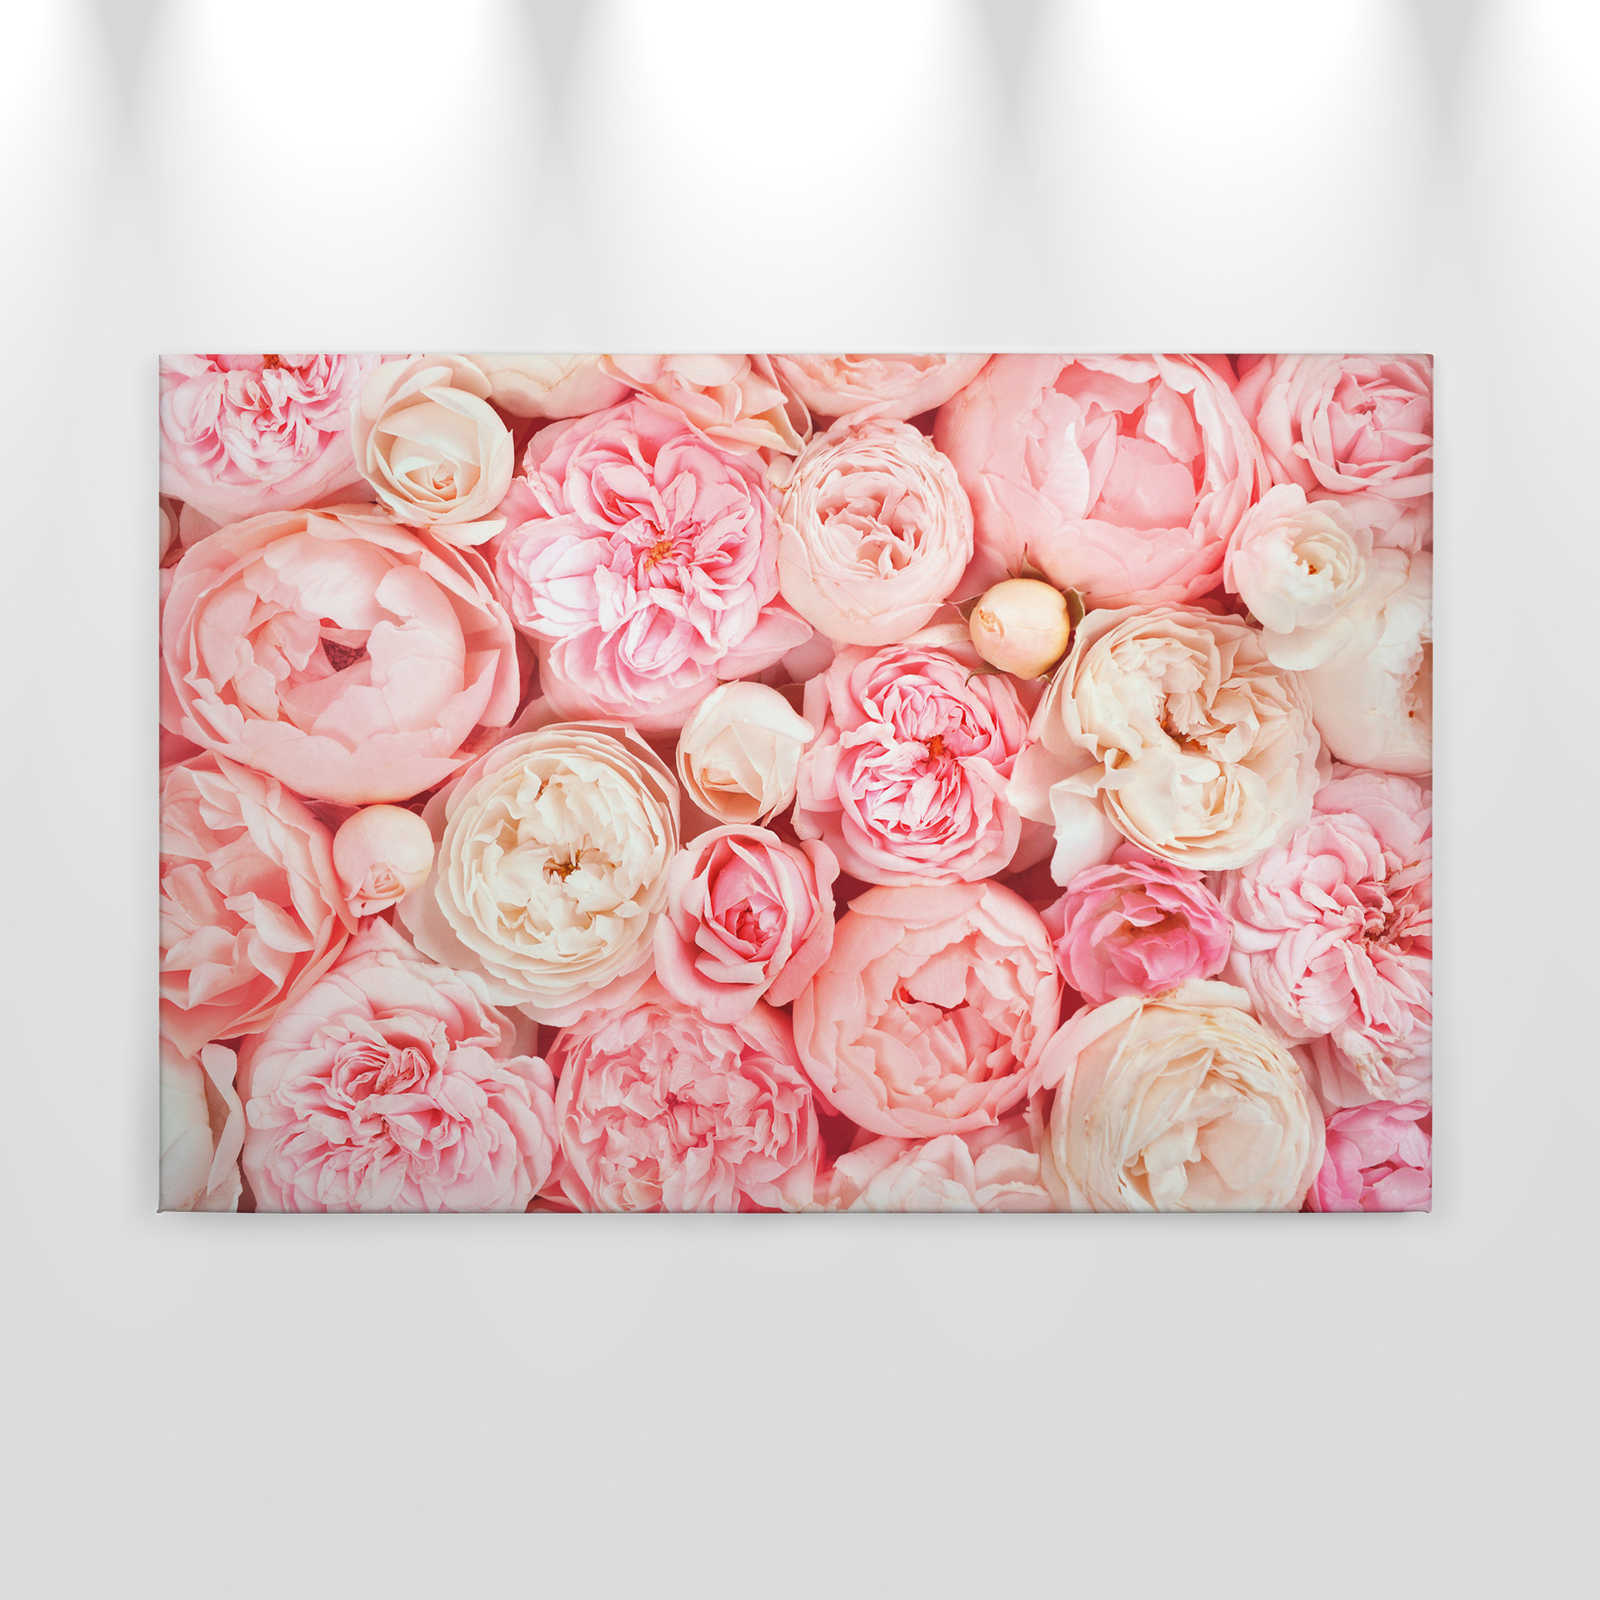             Canvas met rozenmotief - 0,90 m x 0,60 m
        